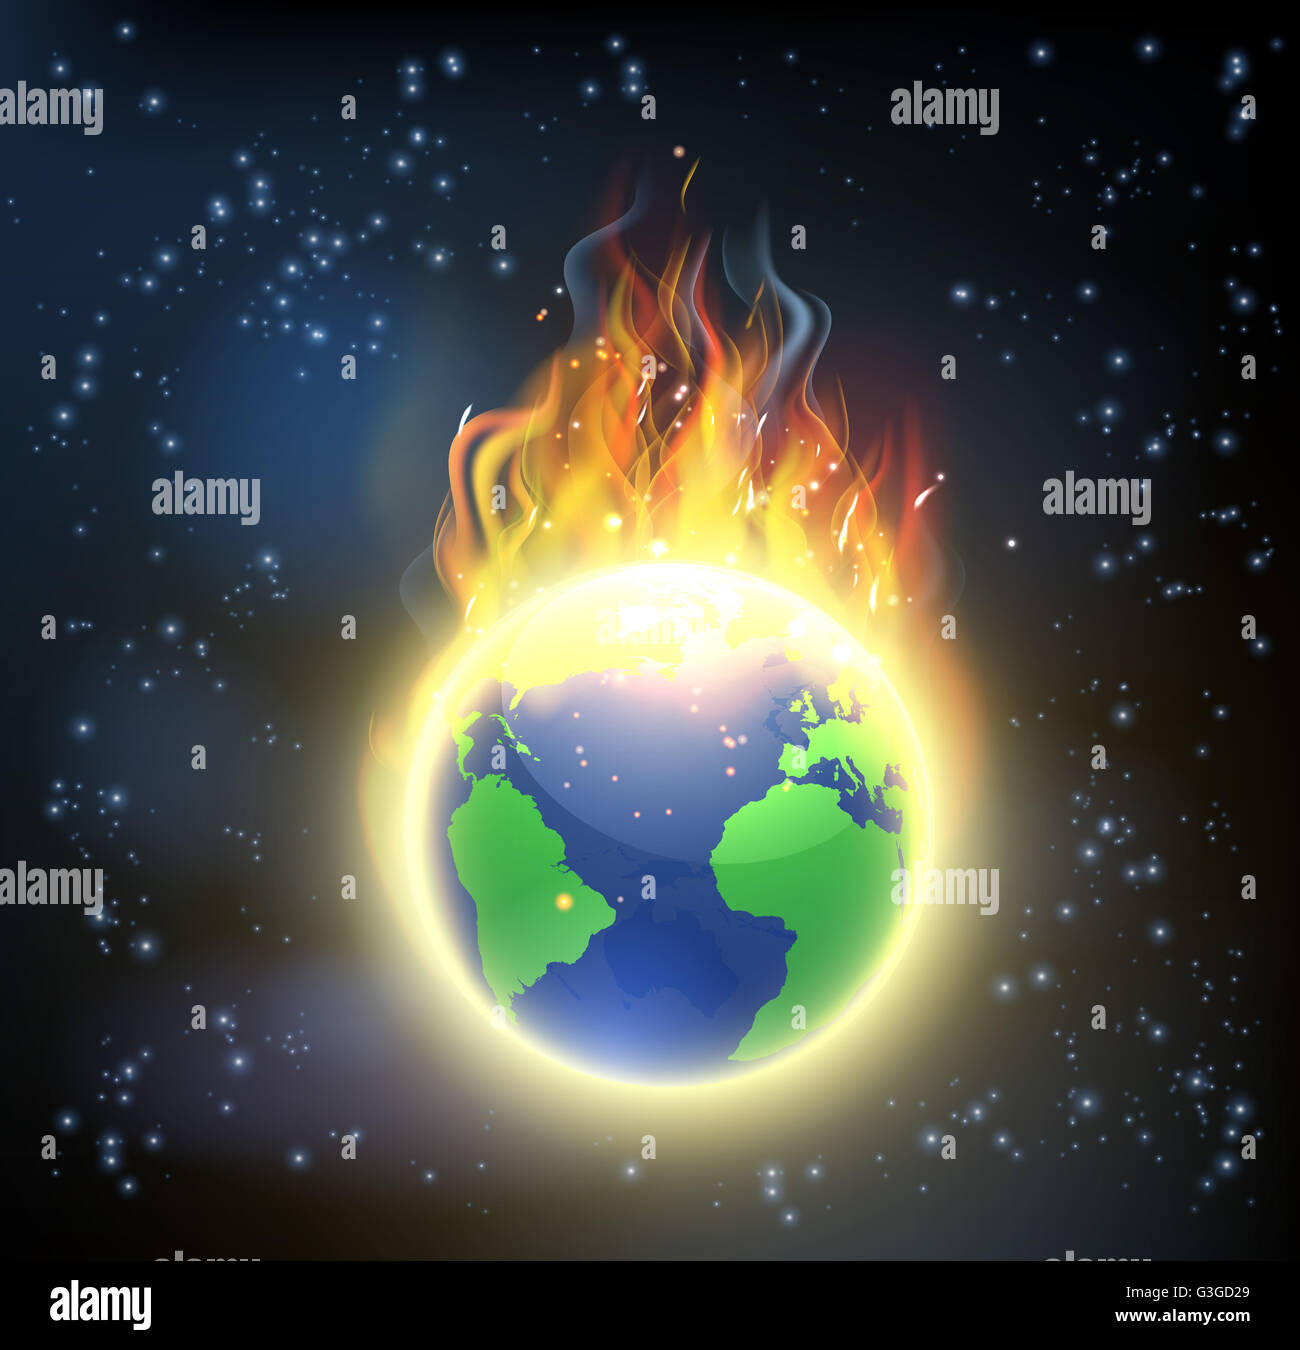 Le monde de la terre en feu, globe concept pour le changement climatique, le réchauffement planétaire, ou autres catastrophes naturelles Banque D'Images